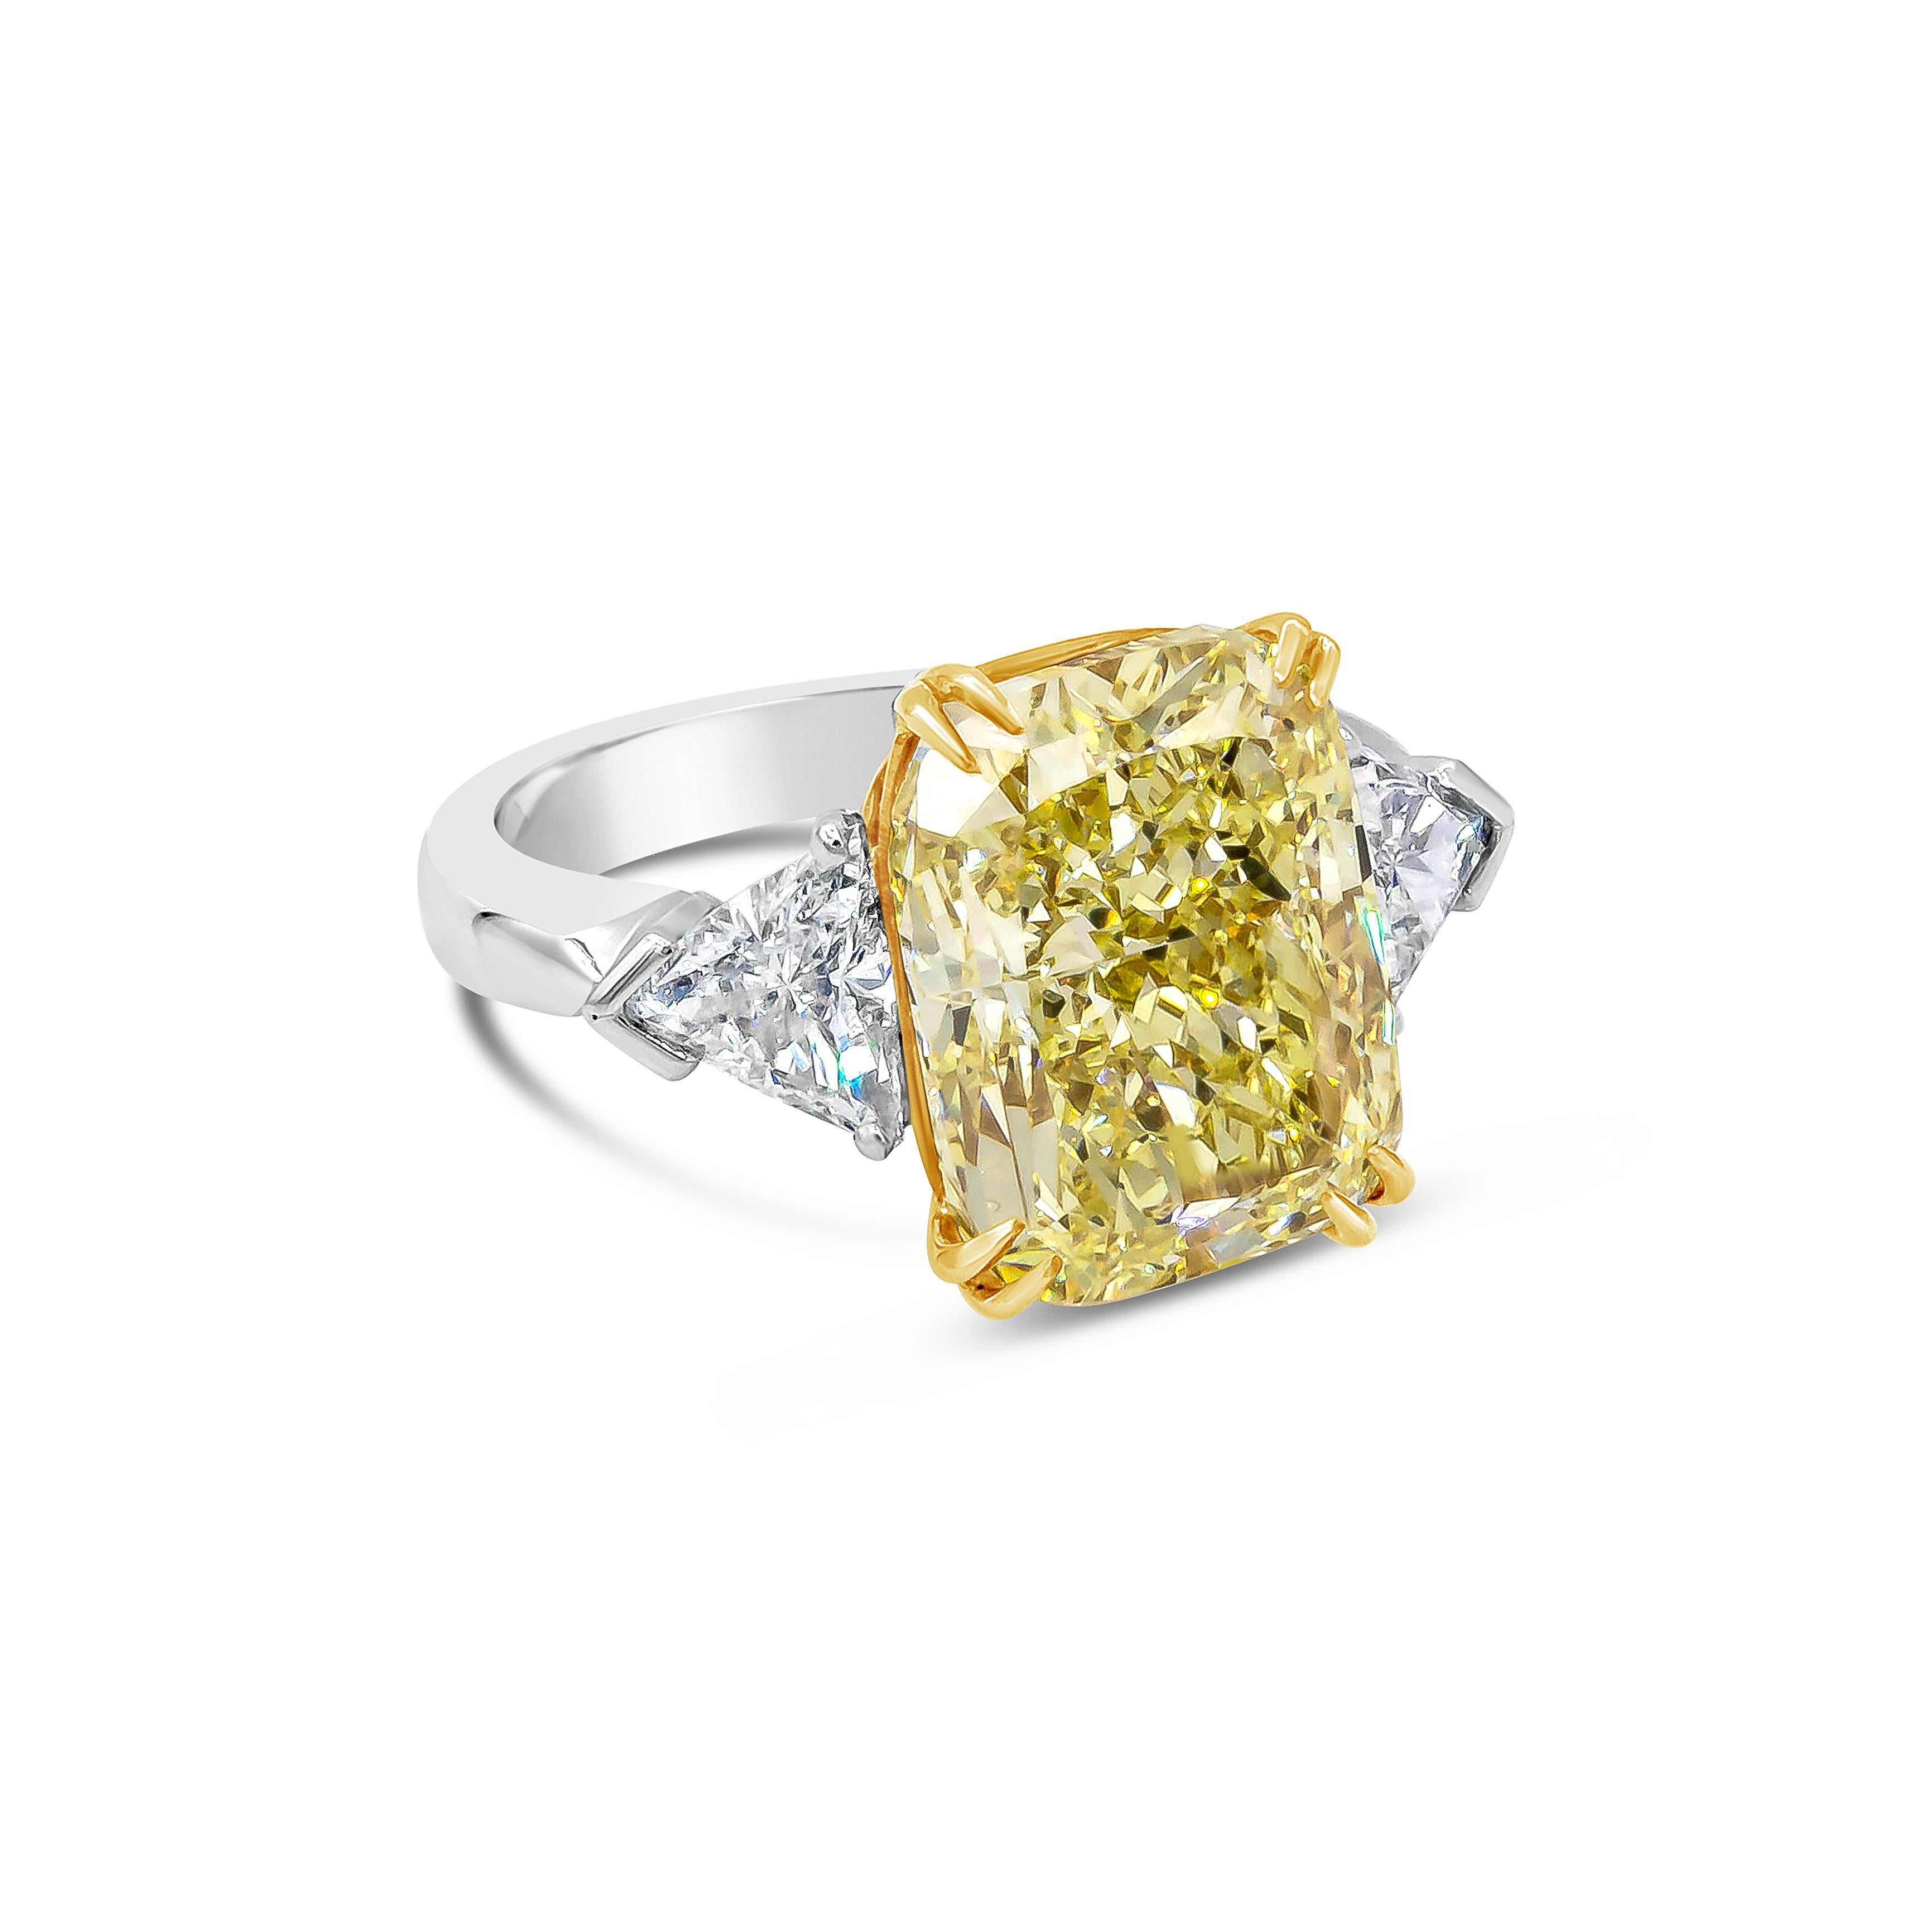 Präsentiert einen 10,11 Karat schweren, kissenförmig geschliffenen Diamanten, der von GIA mit der Farbe Fancy Yellow und der Reinheit SI1 zertifiziert wurde, gefasst in 18 Karat Gelbgold mit acht Zacken. Akzentuiert mit Billionen von Diamanten auf